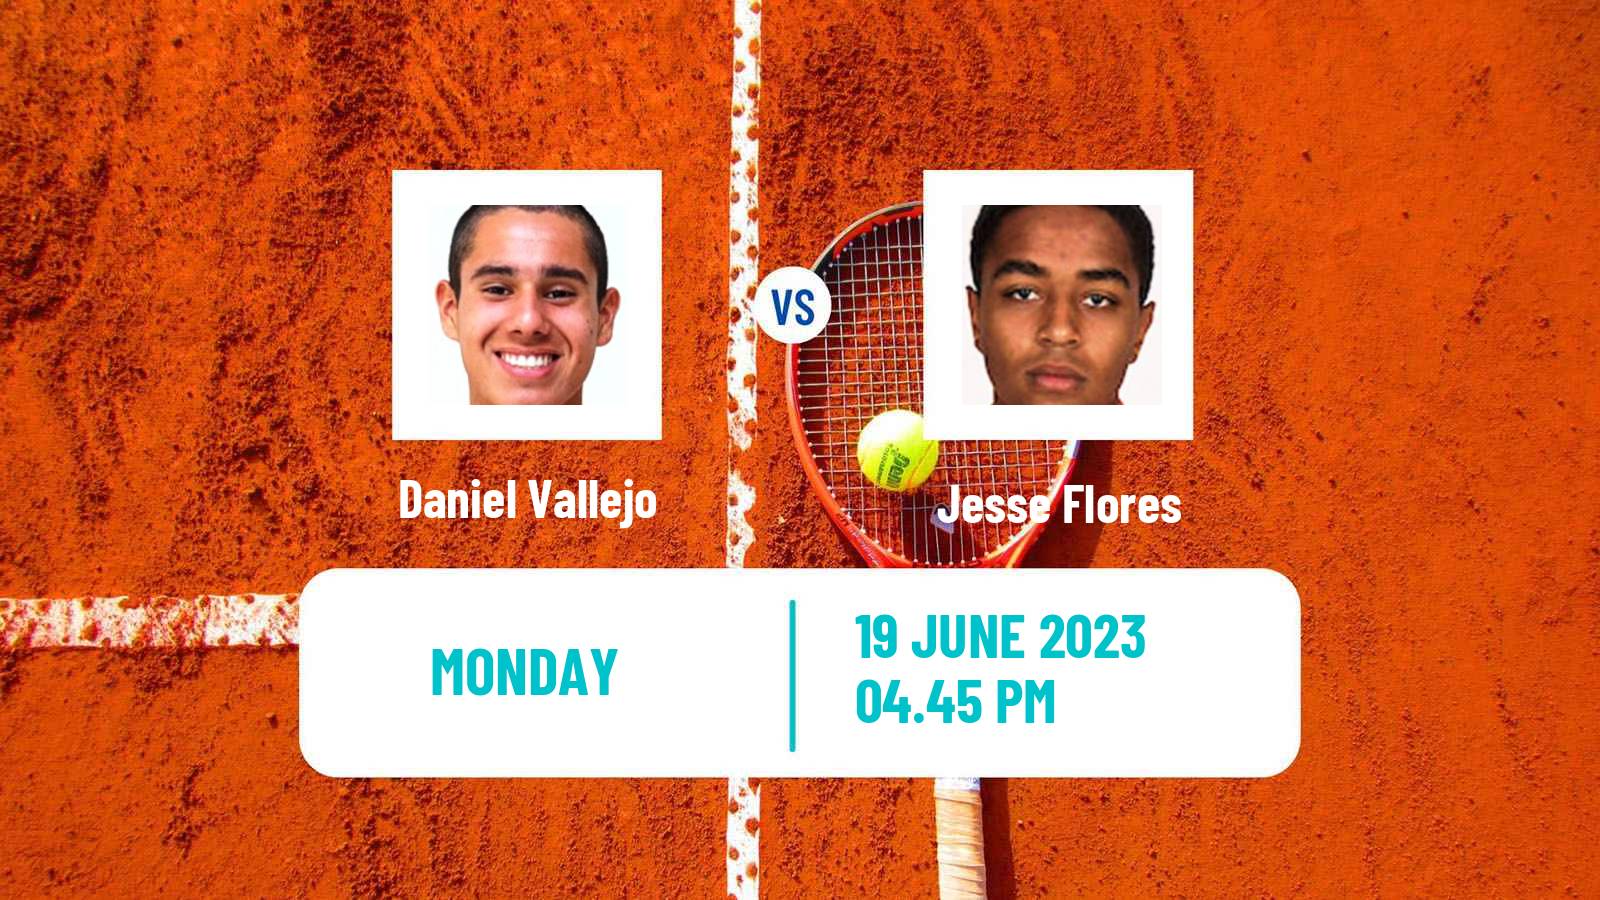 Tennis Davis Cup Group III Daniel Vallejo - Jesse Flores